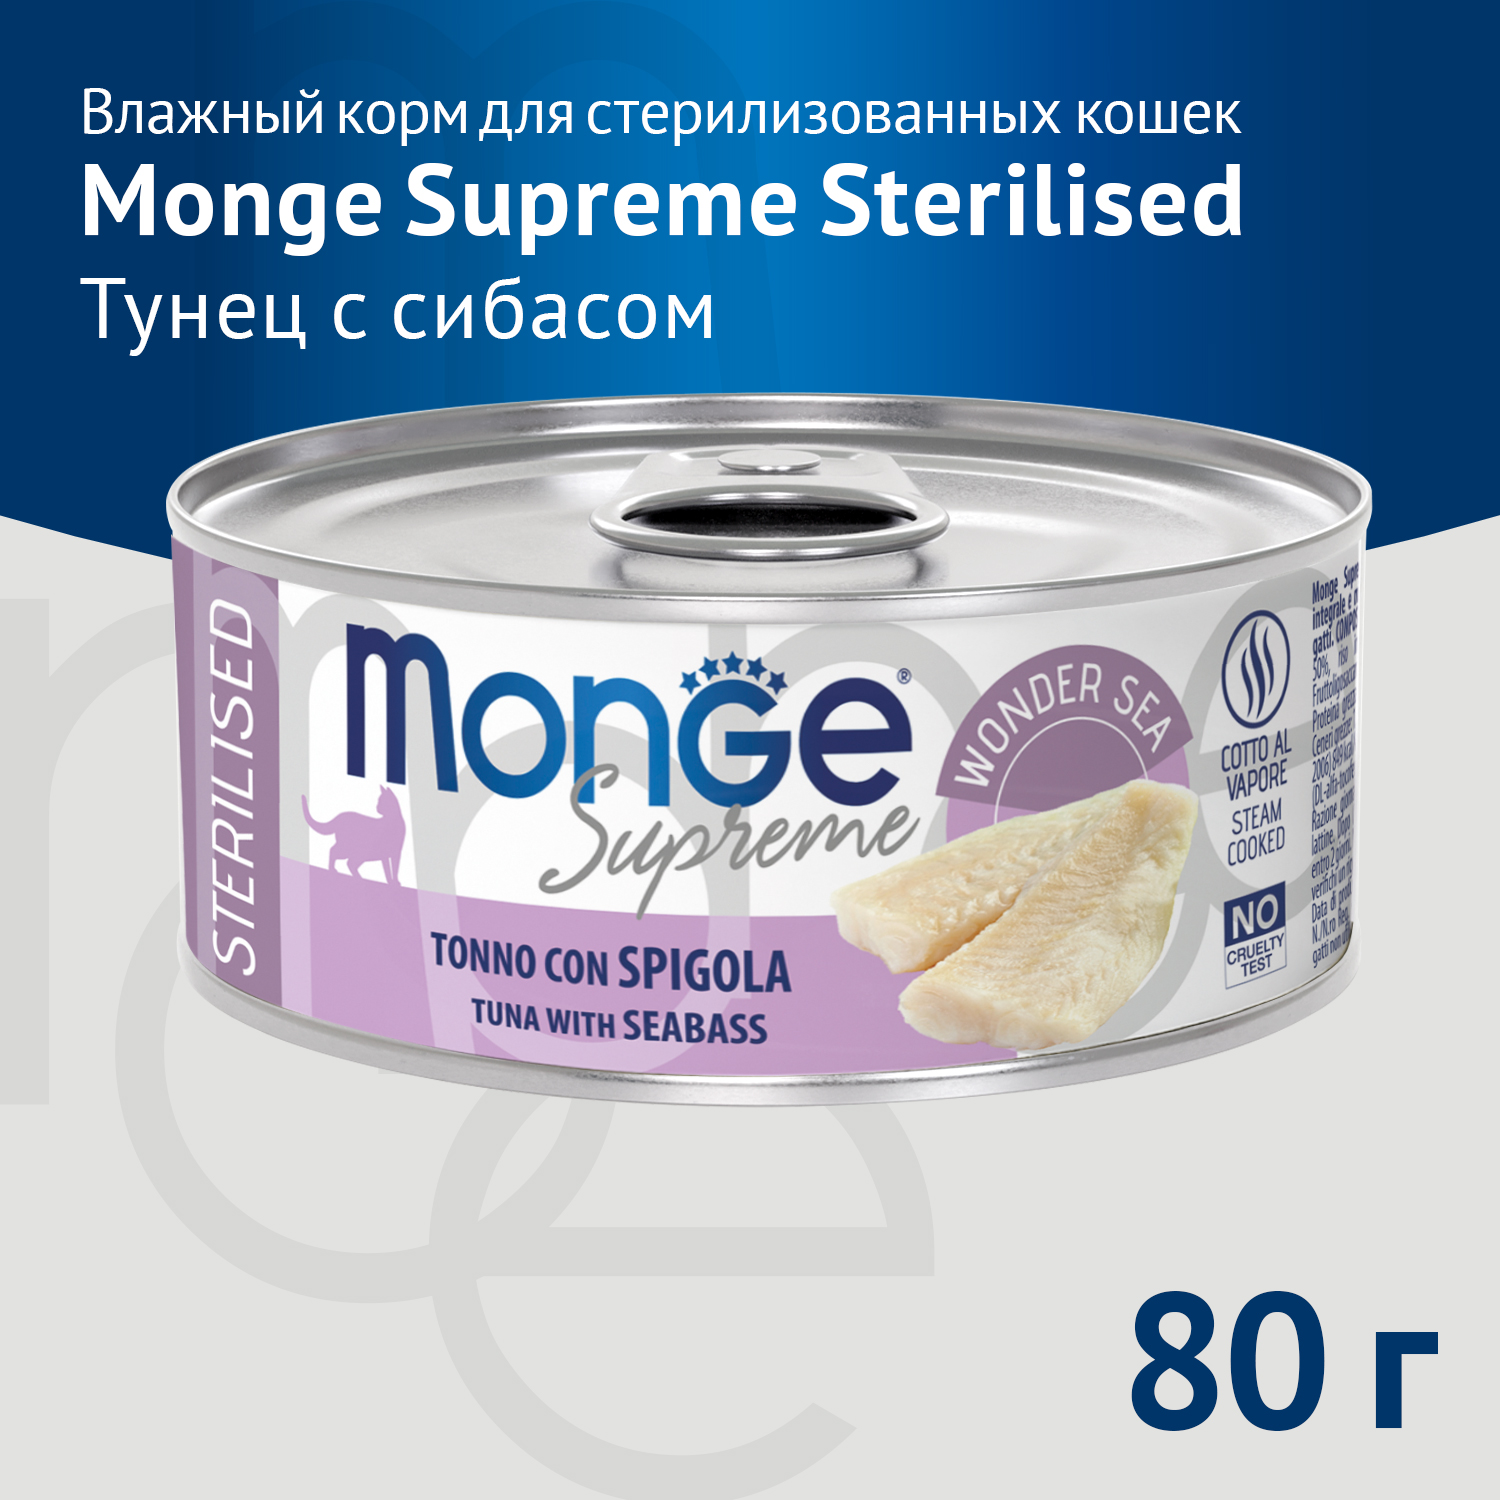 Влажный корм Monge Supreme sterilized для стерилизованных кошек из тунца с морским окунем, консервы 80 г